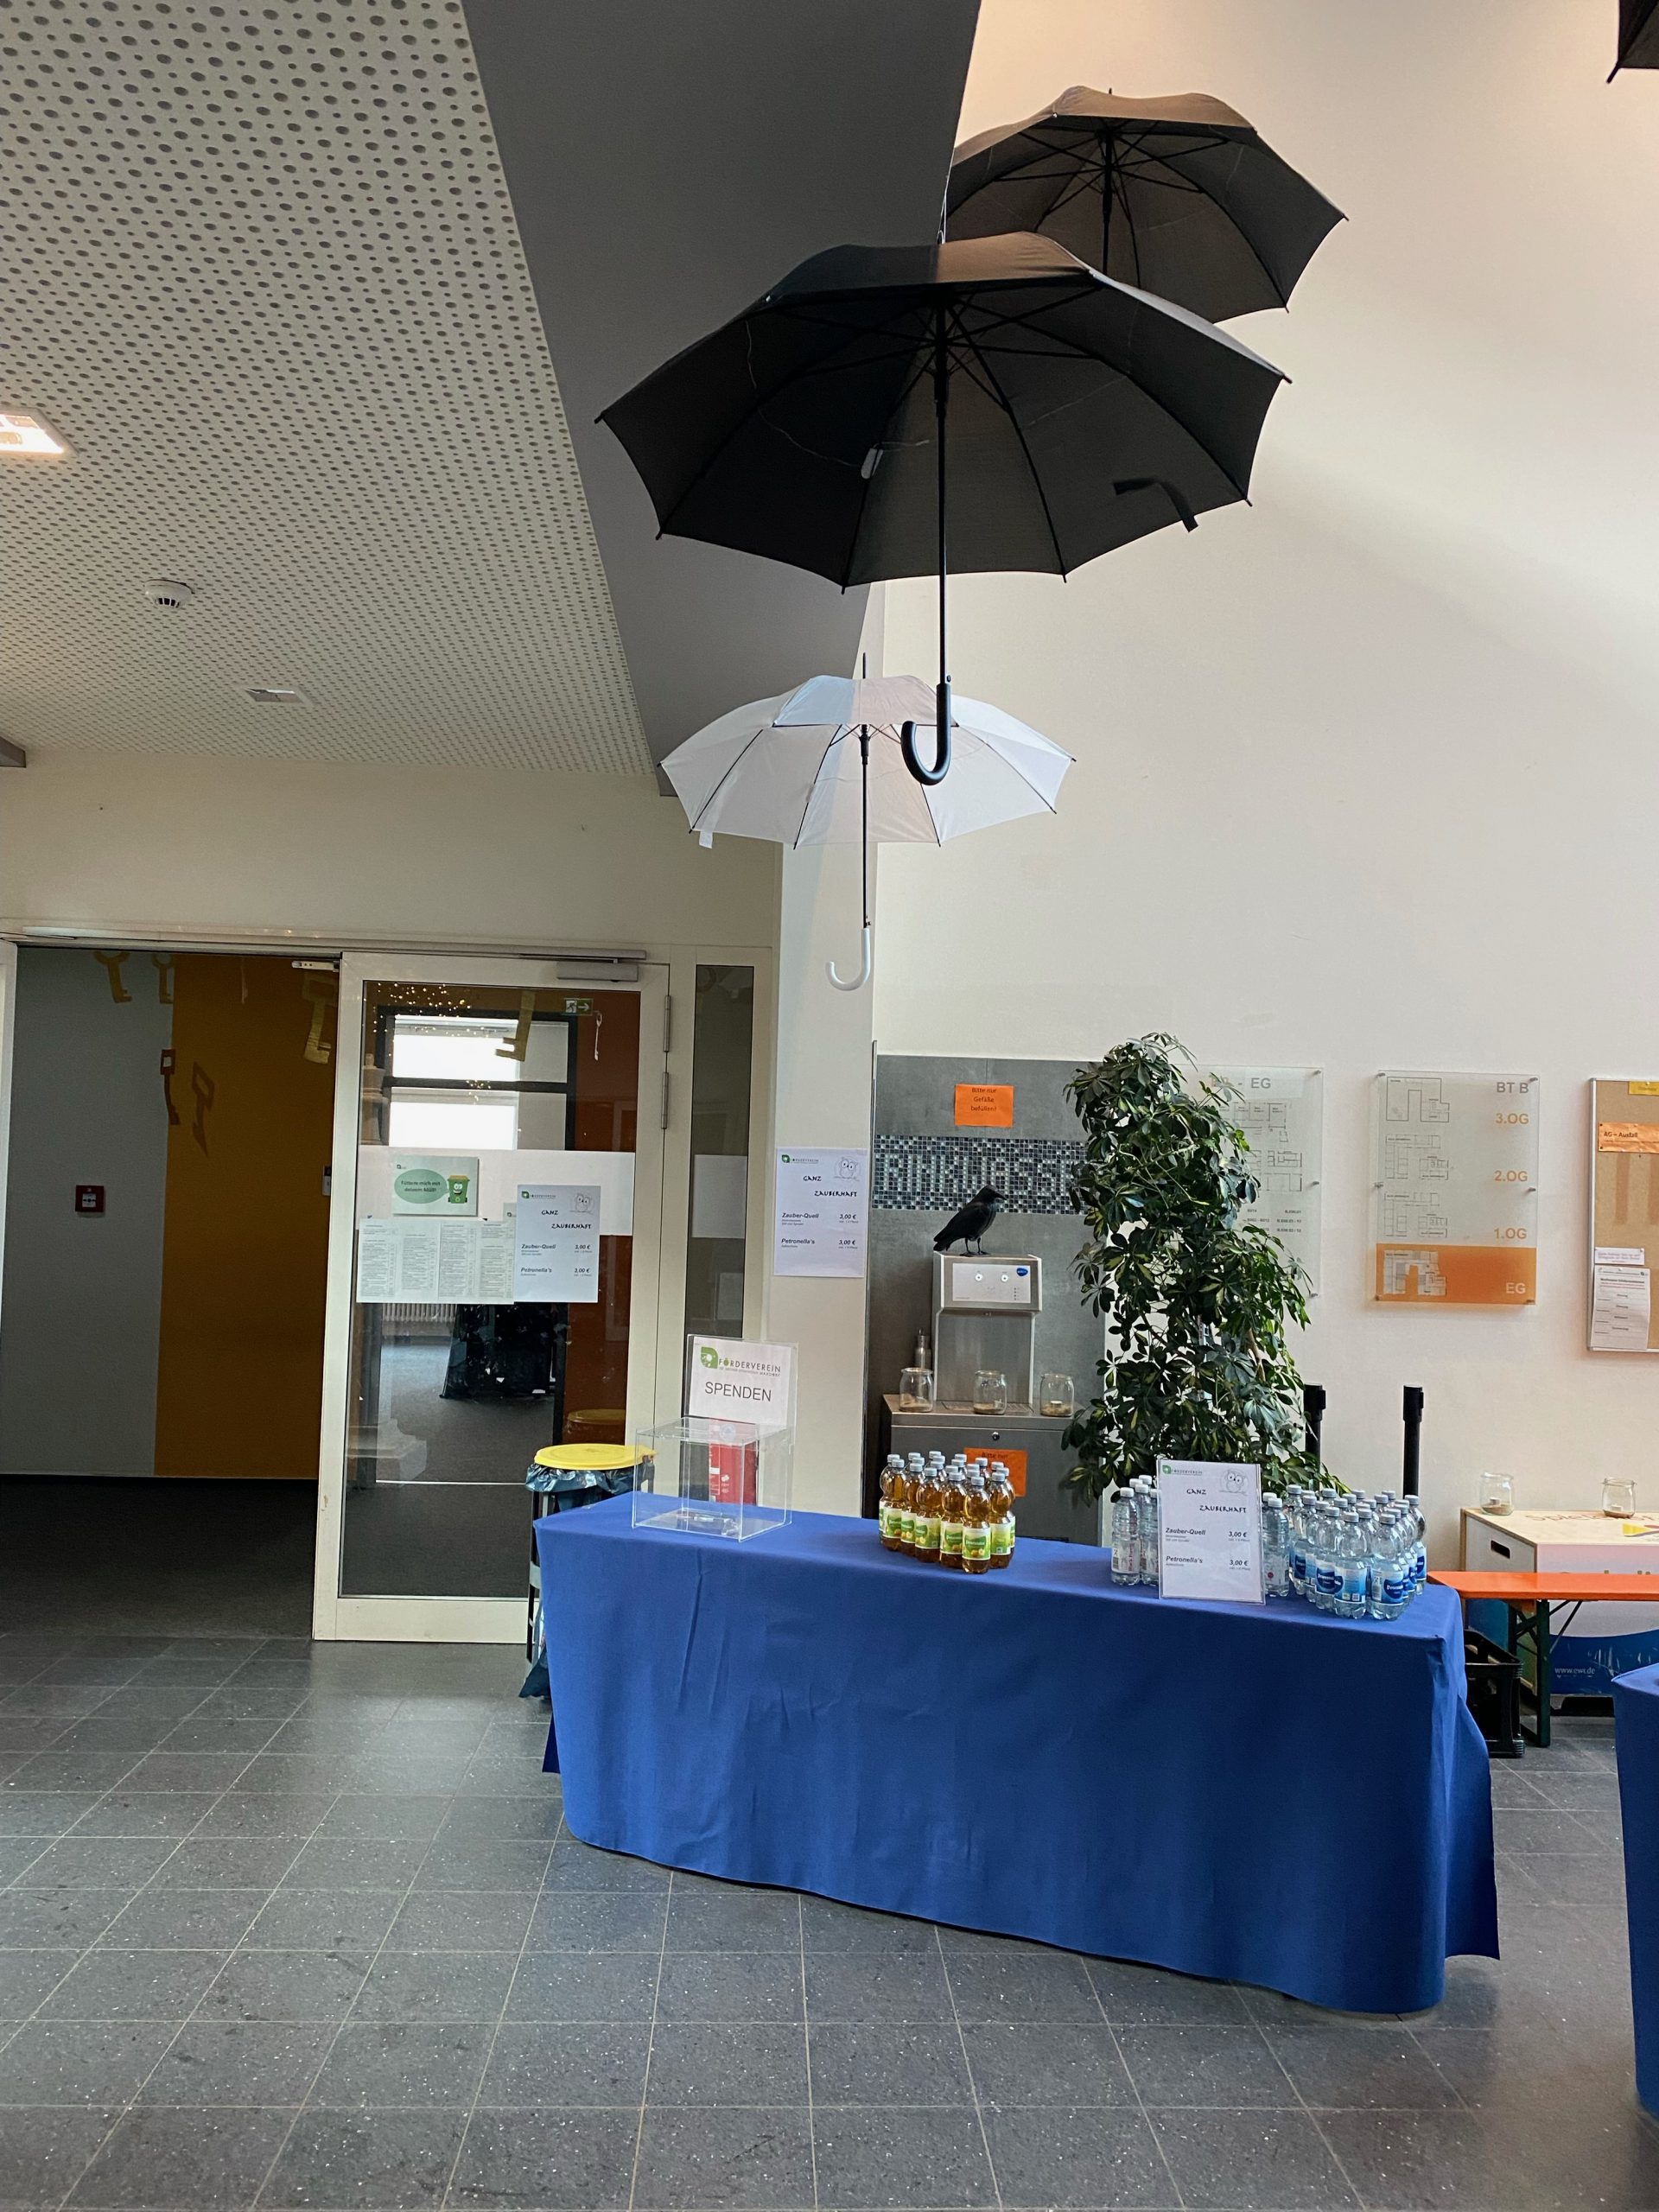 Tisch vom Förderverein des LMG am Leseabend 2023 mit fliegenden Schirmen